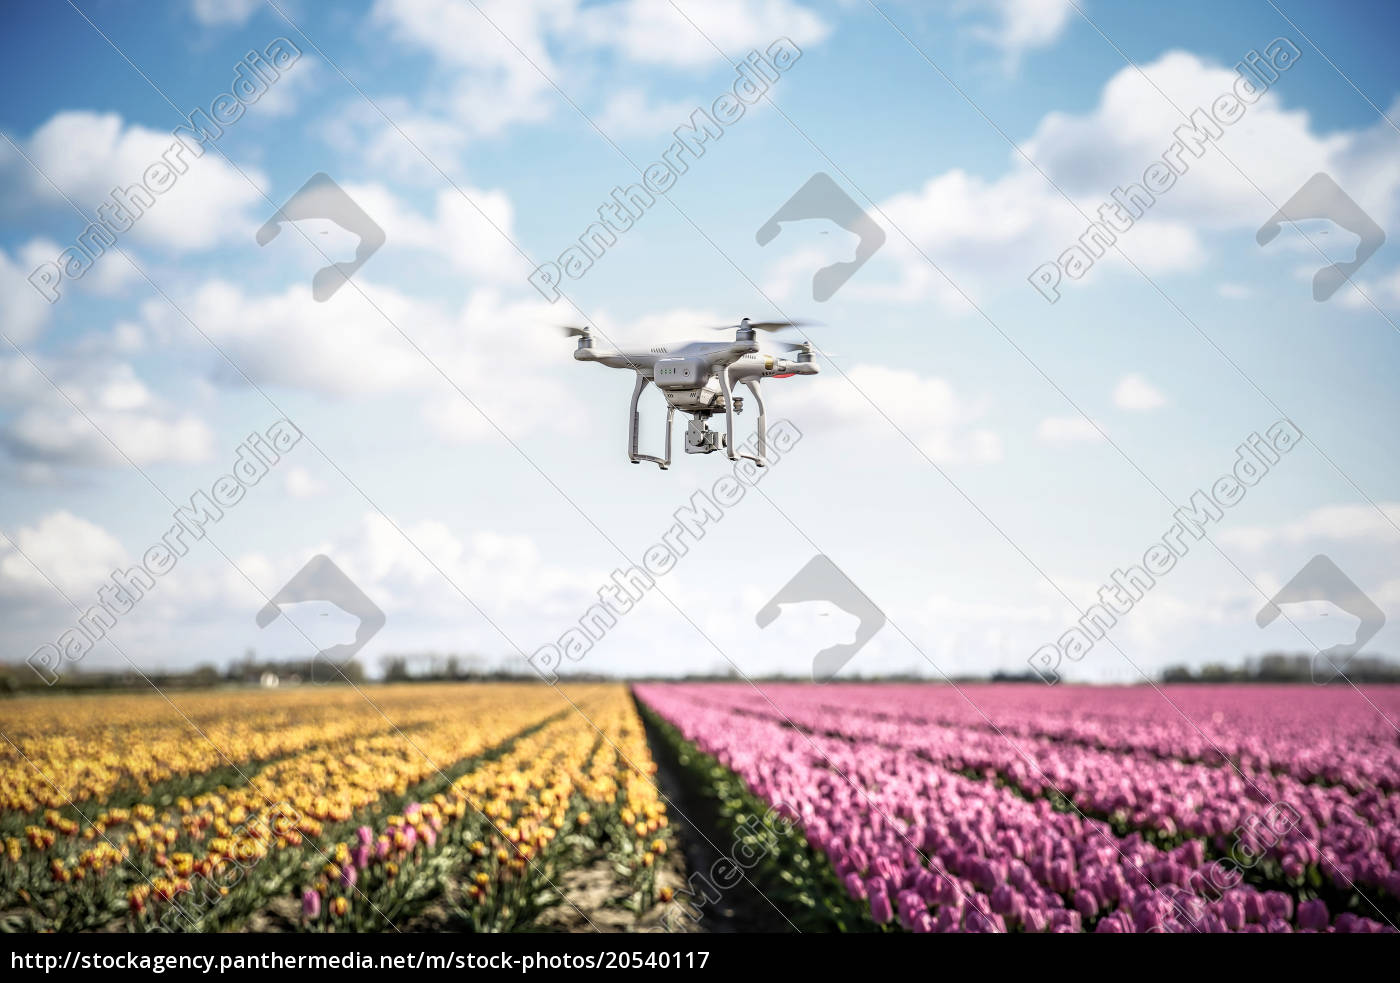 Niederlande Drohne Mit Kamera Fliegt über Tulpenfelder Lizenzfreies Bild 20540117 